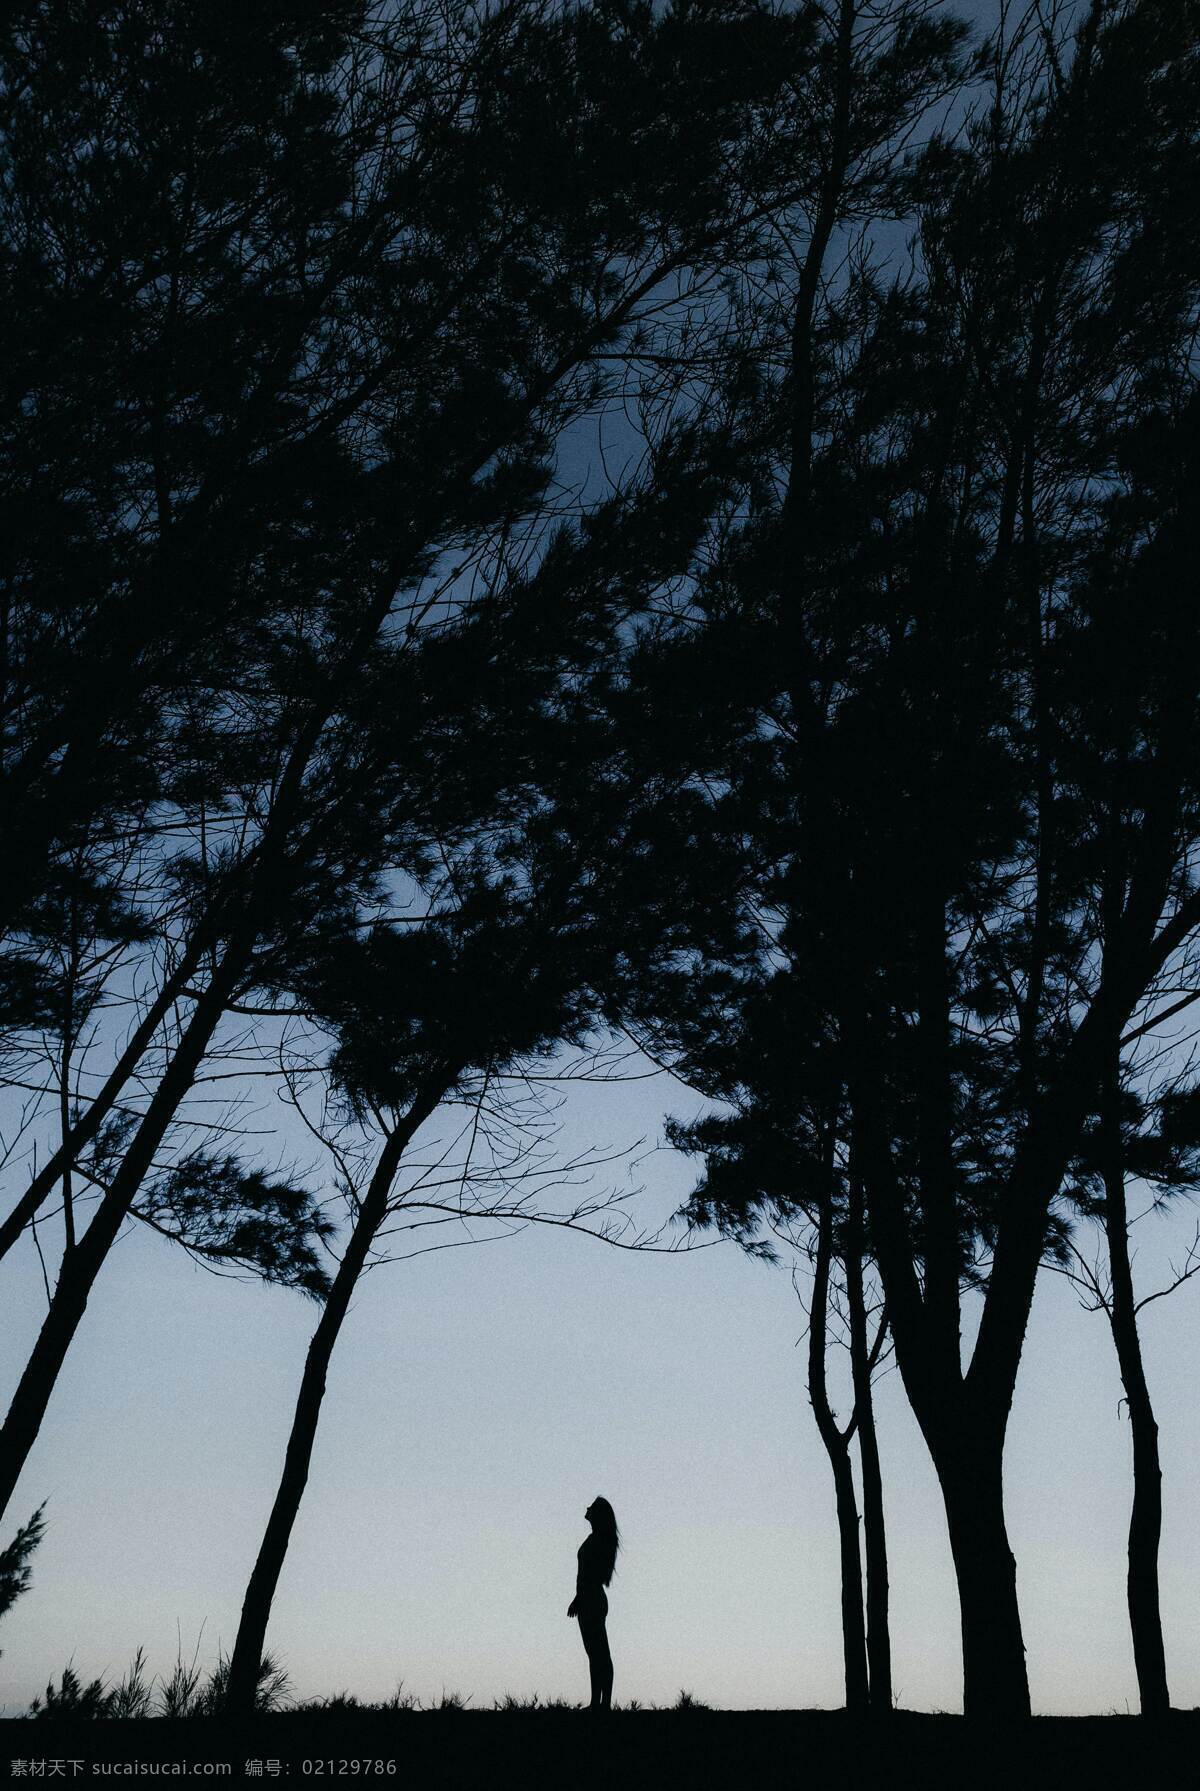 树林 森林 人物 孤单 黑夜 素材图片 背景